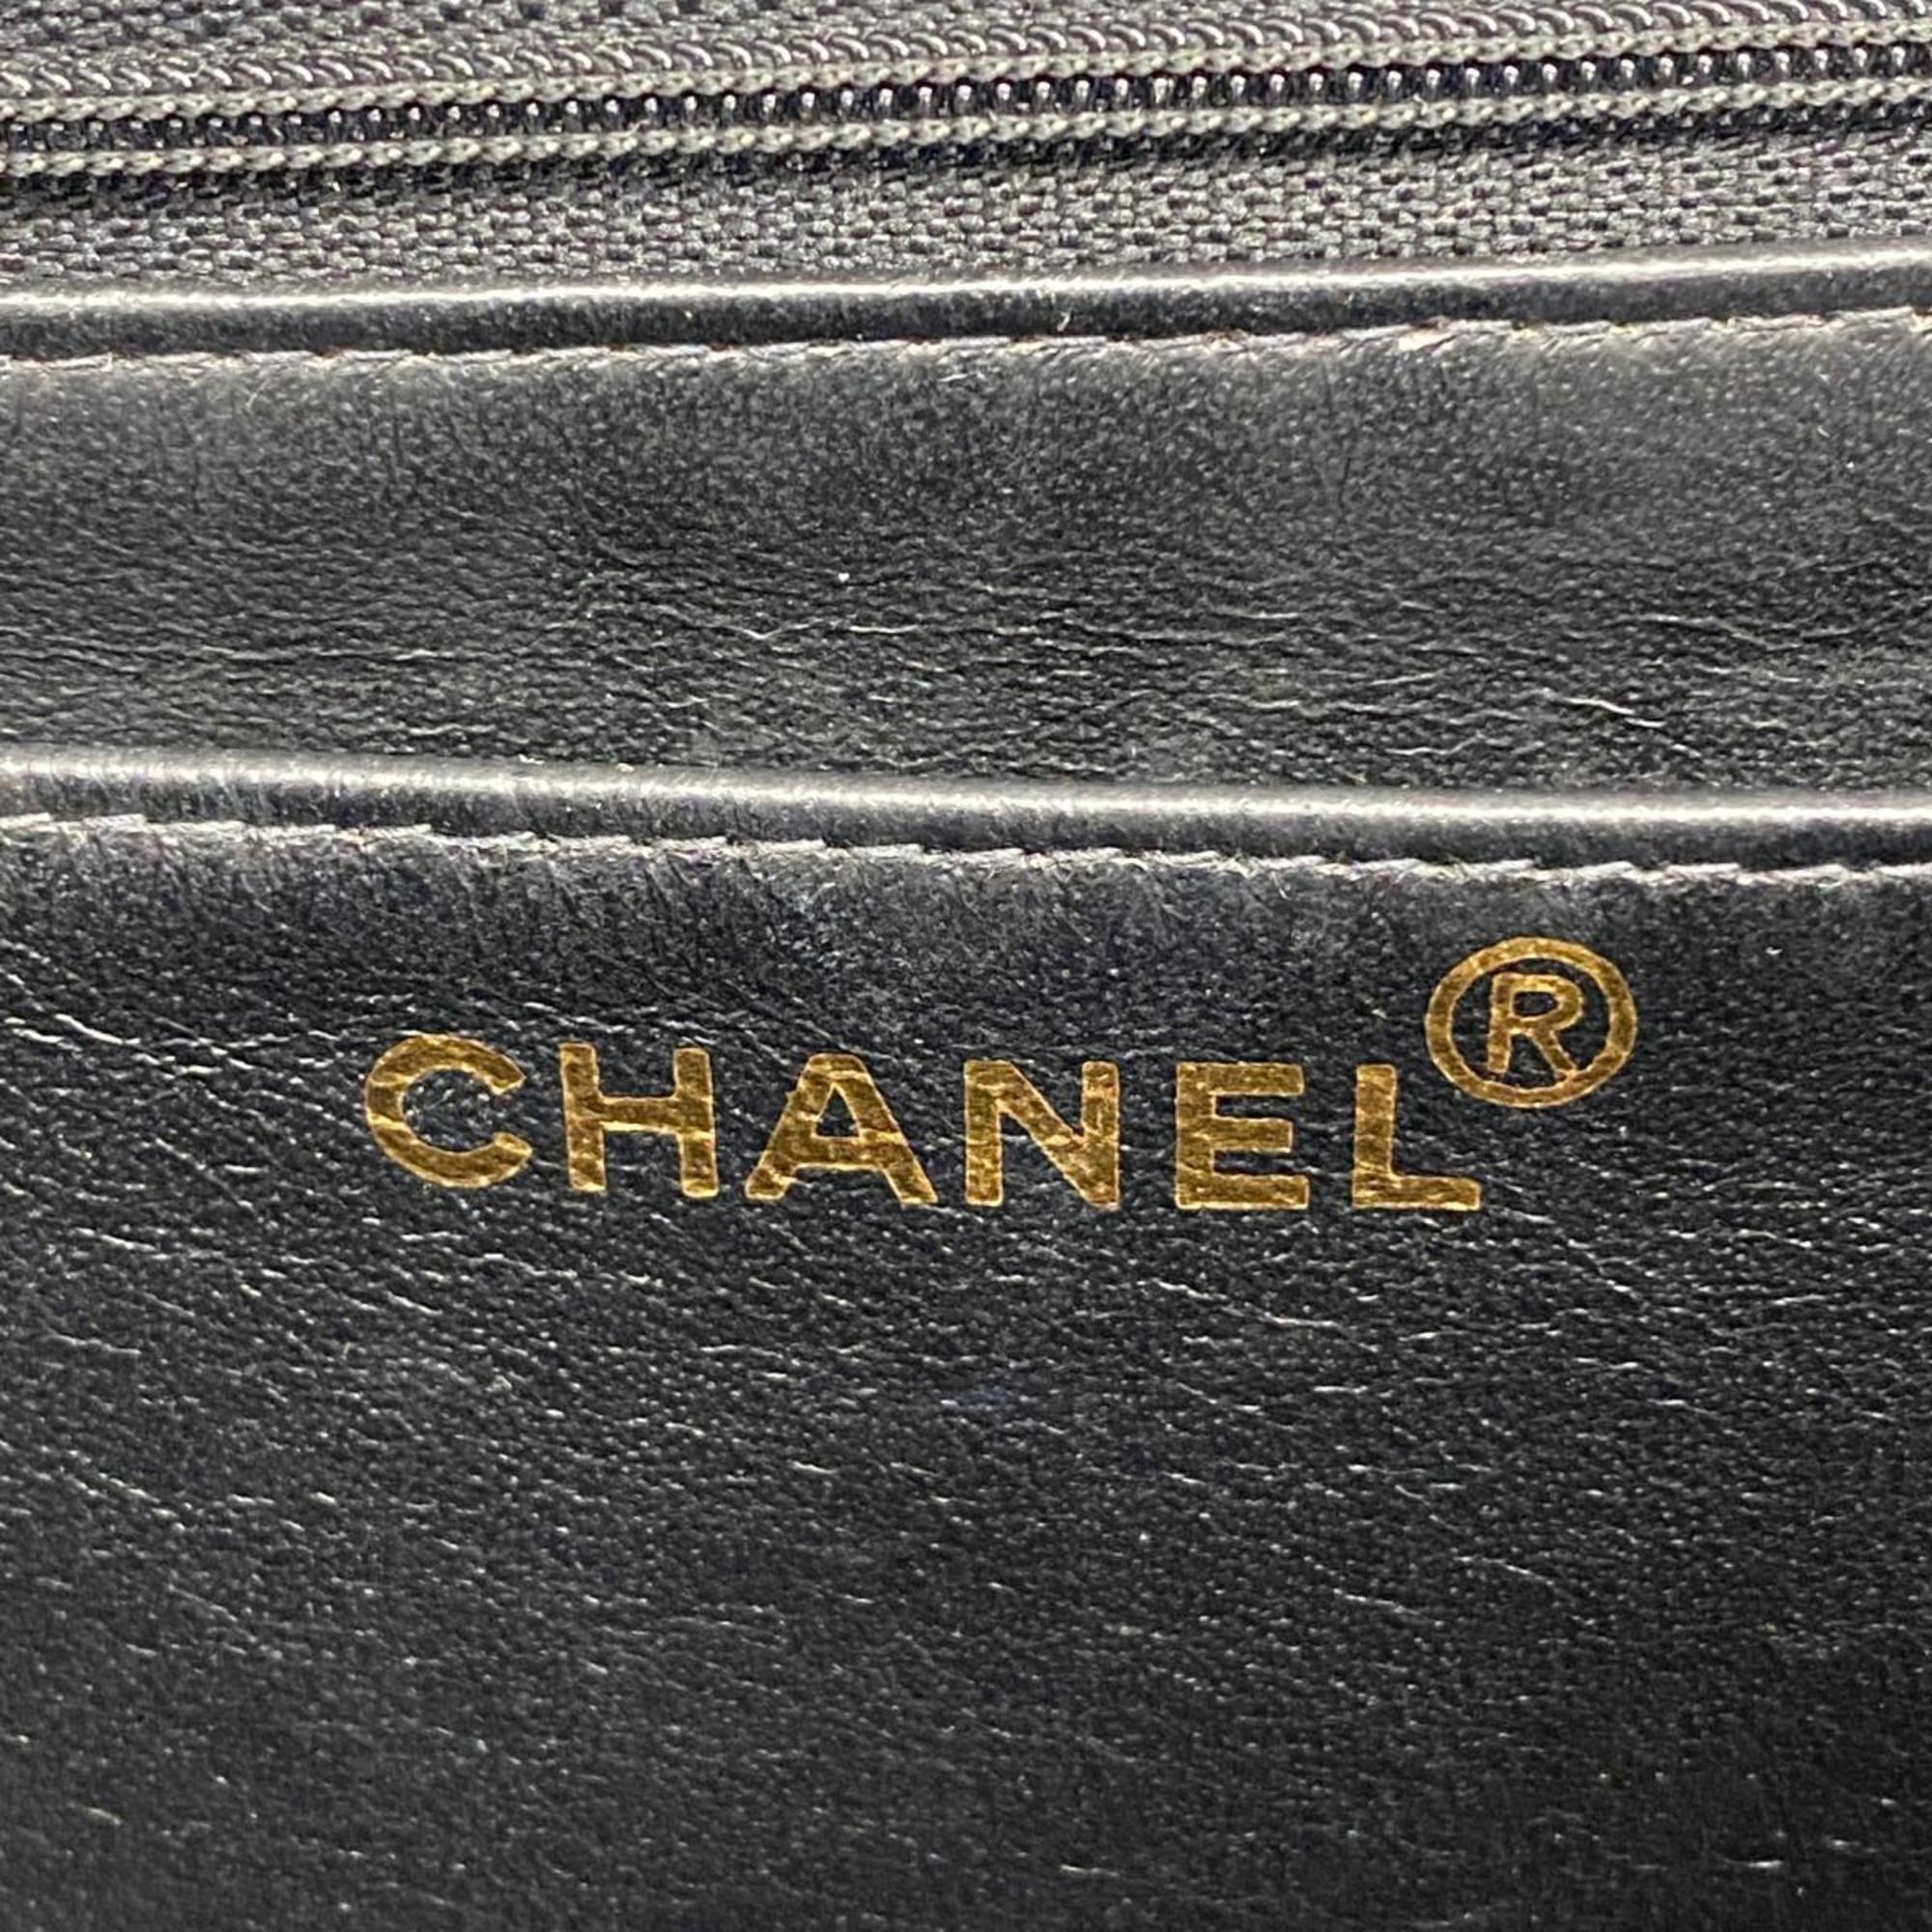 シャネル(Chanel) シャネル ショルダーバッグ マトラッセ デカマトラッセ Wチェーン ラムスキン ブラック   レディース